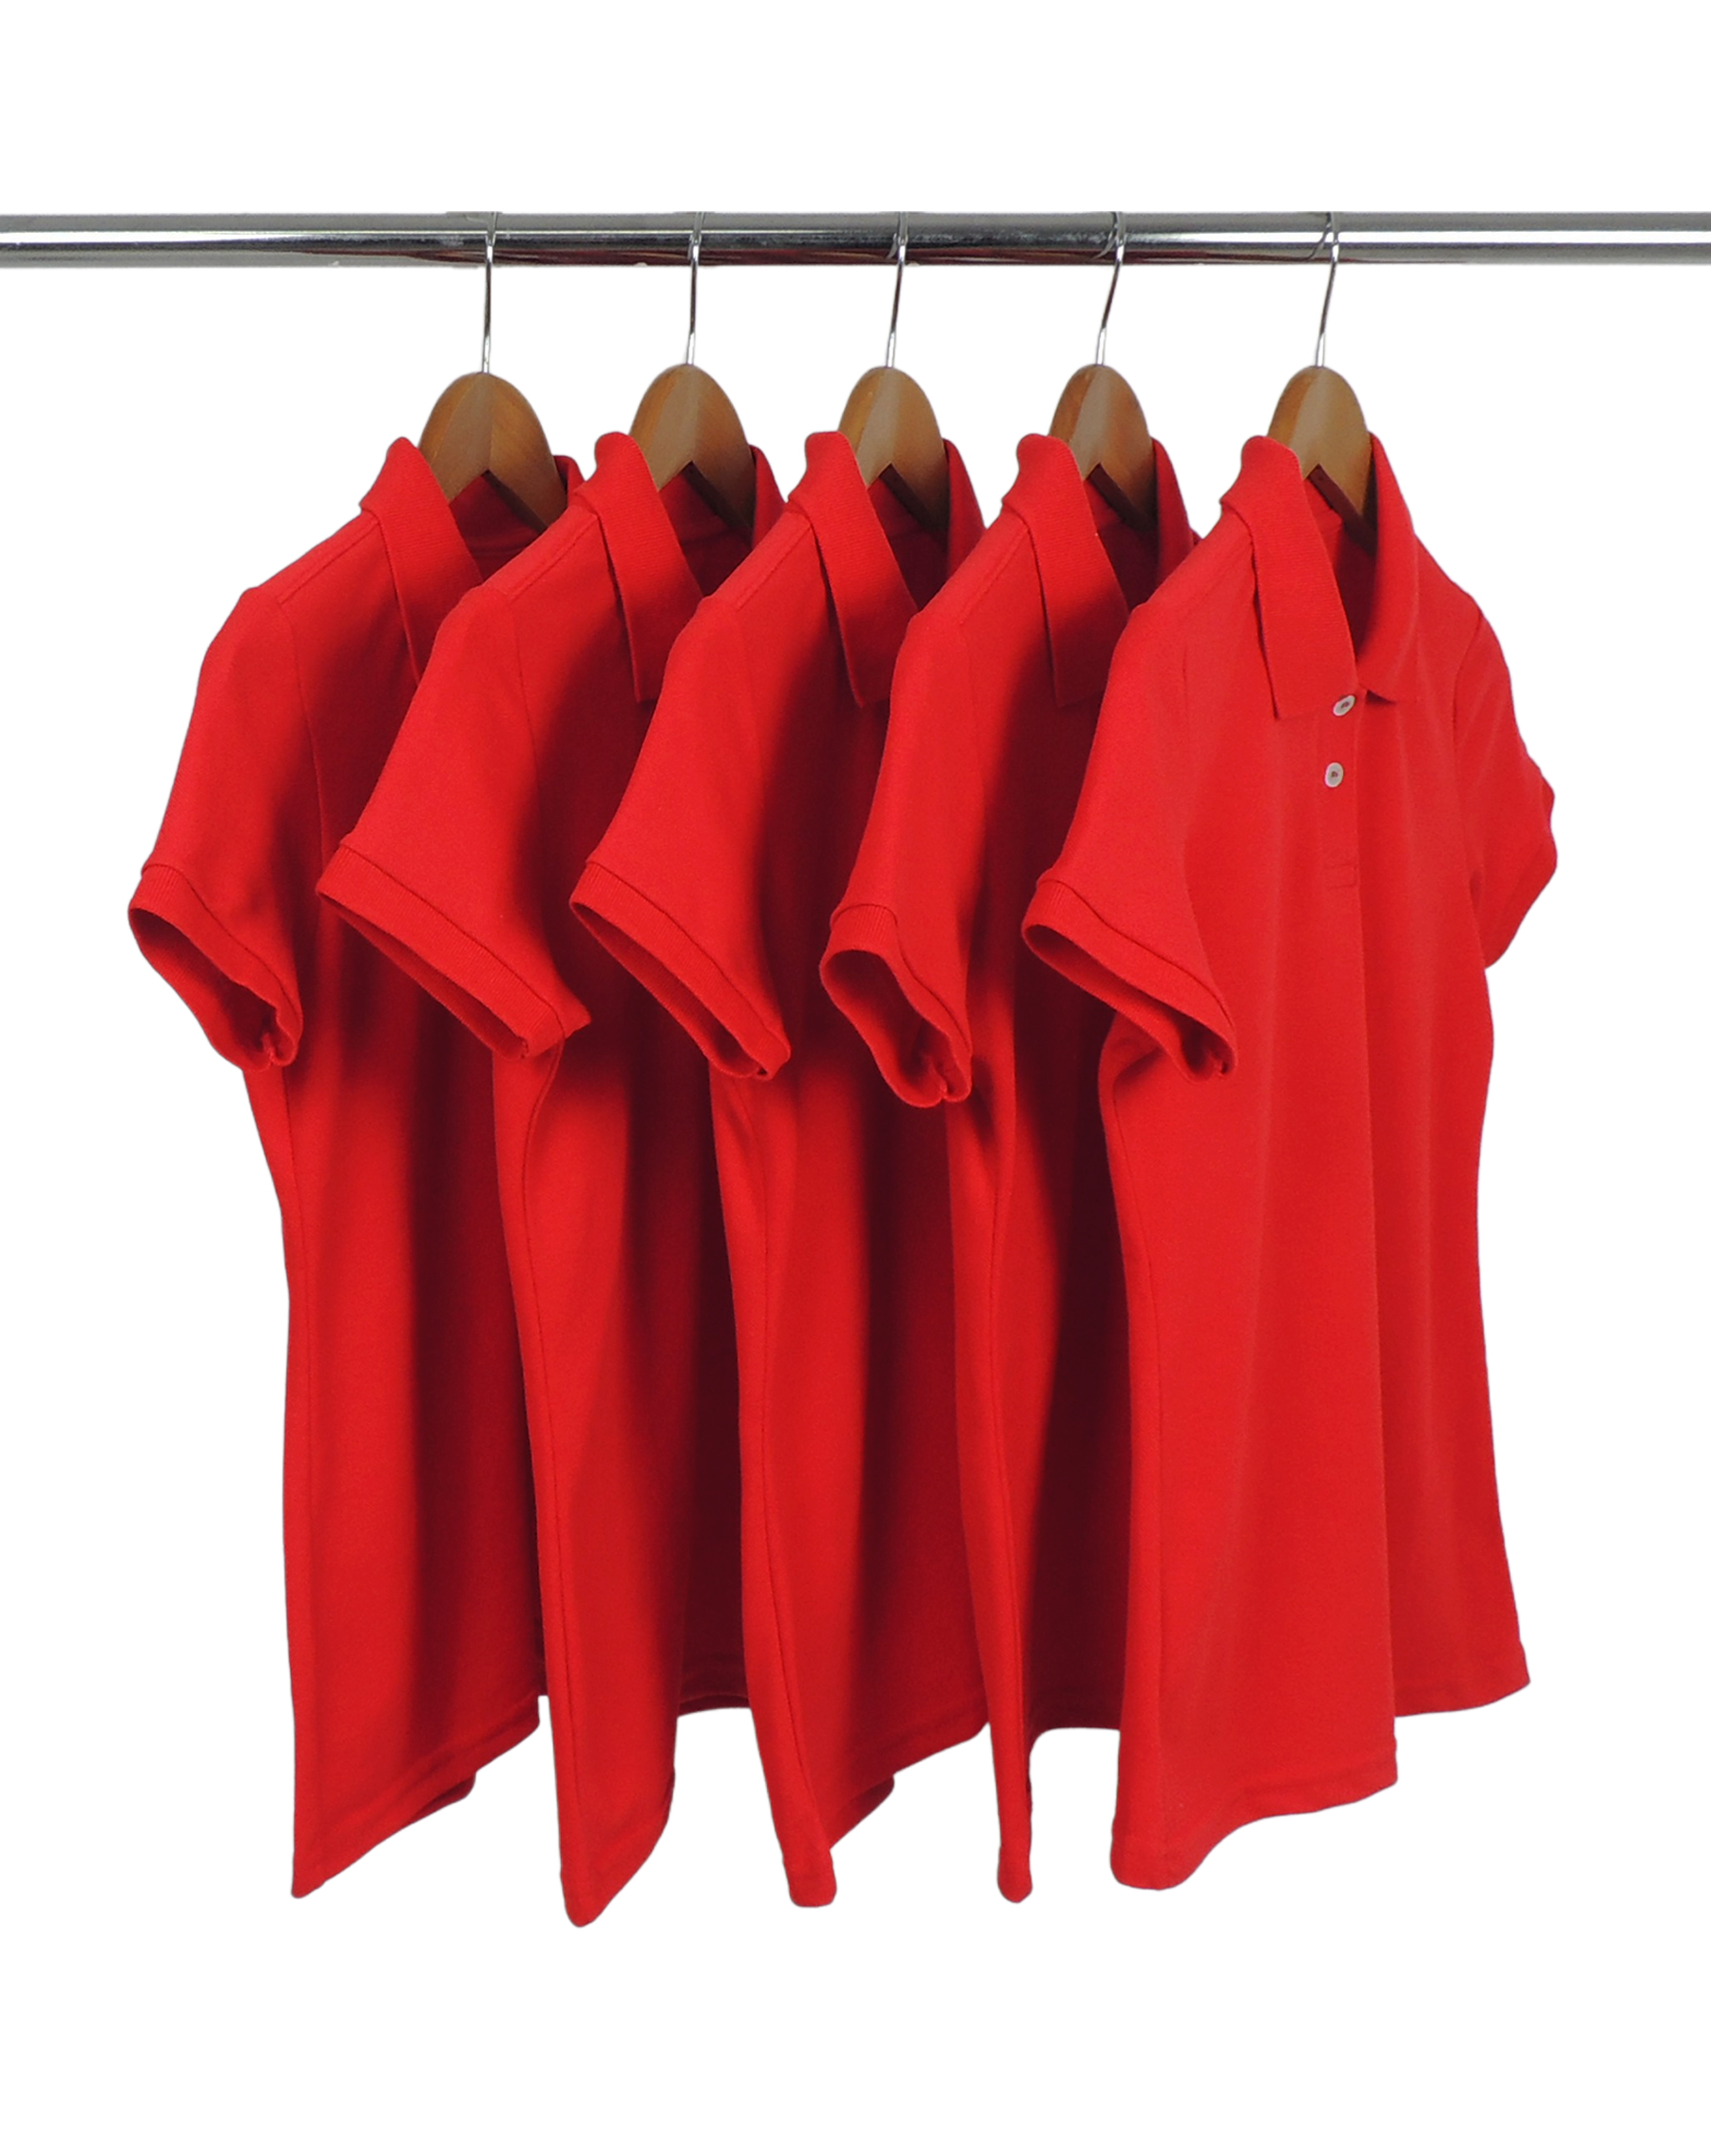 KIT 5 Camisas Polo Piquet Feminina Vermelha